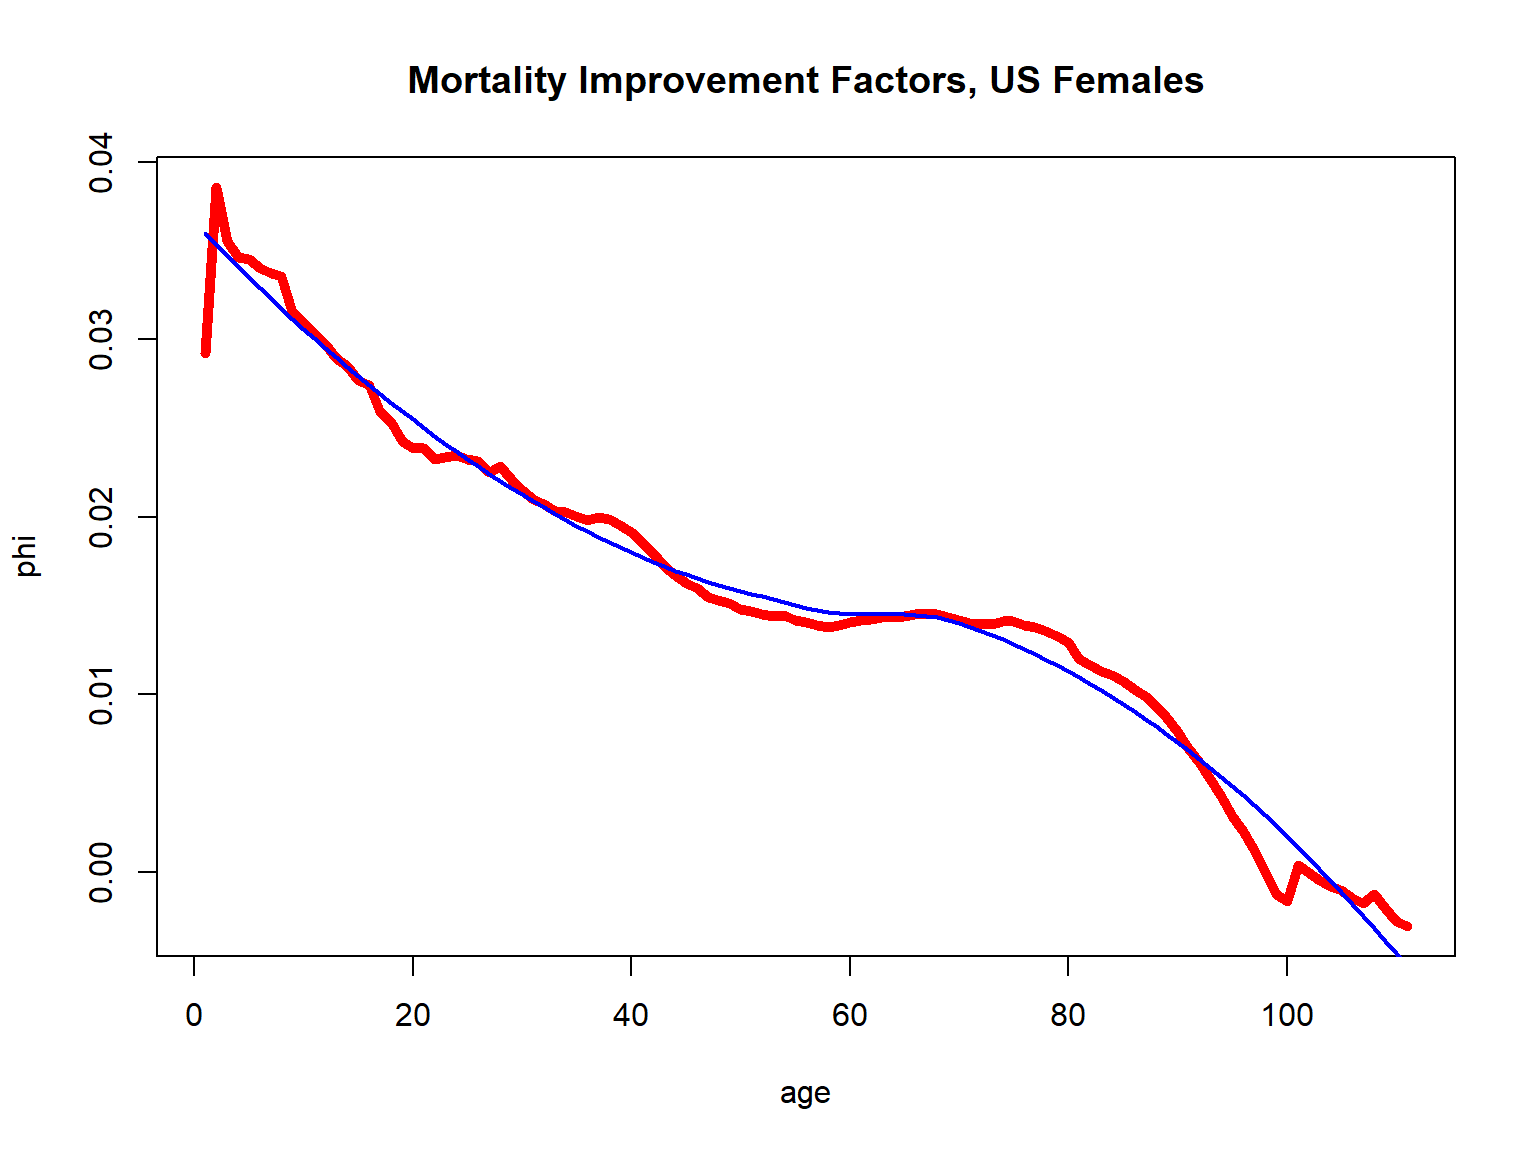 Mortality Improvement Factors for U.S. Females